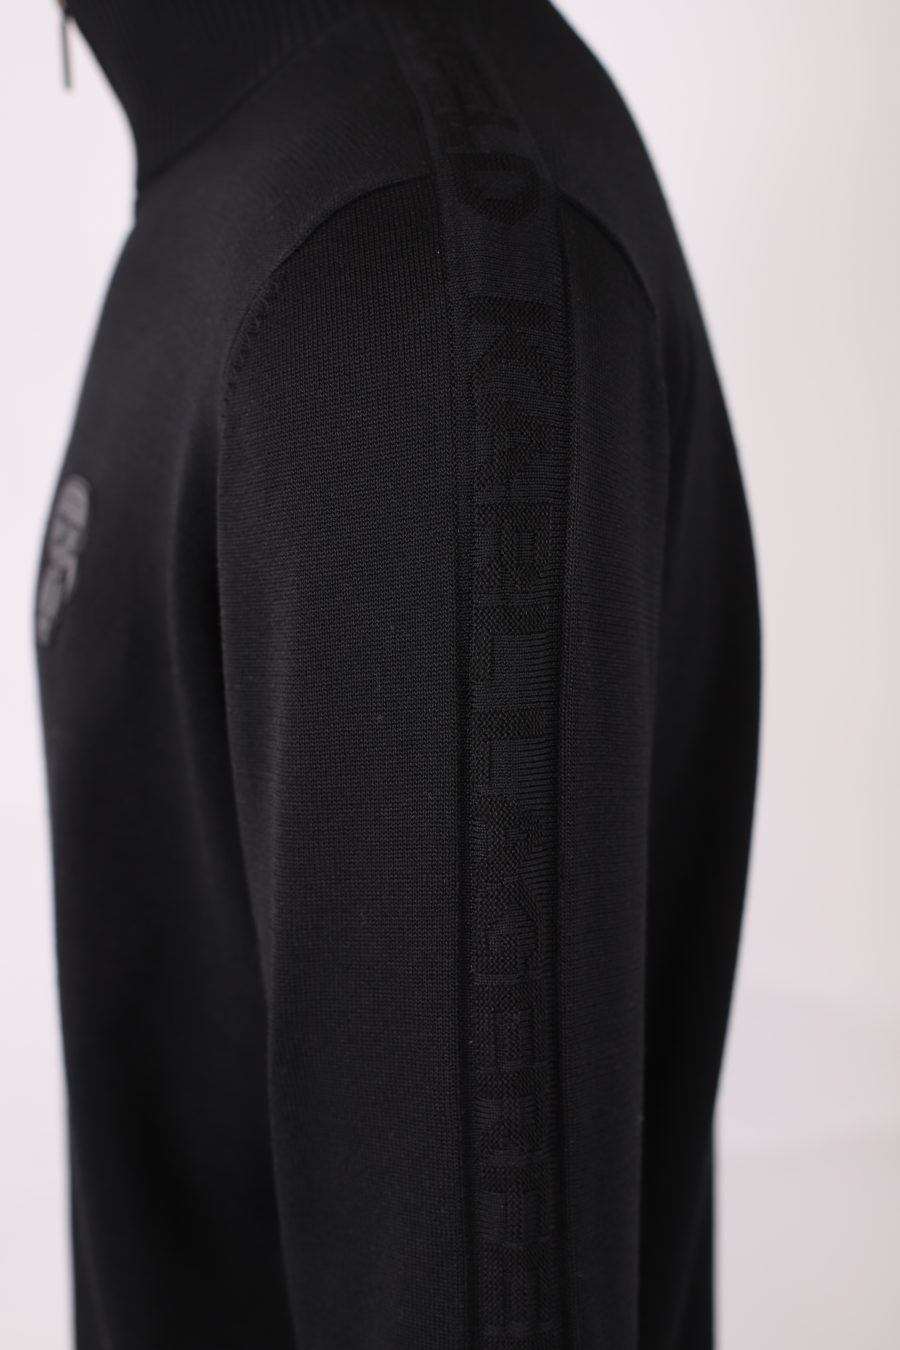 Camisola preta com fecho de correr e logótipo "Karl" em borracha - IMG 9162